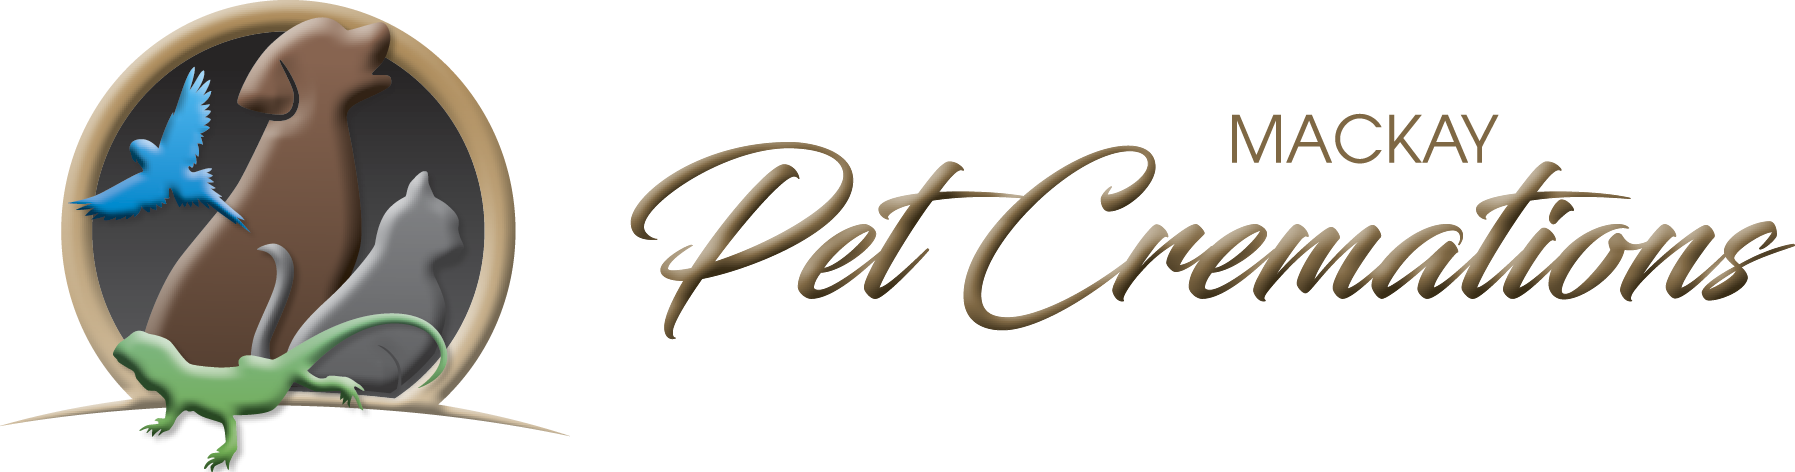 Mackay Pet Cremations Logo